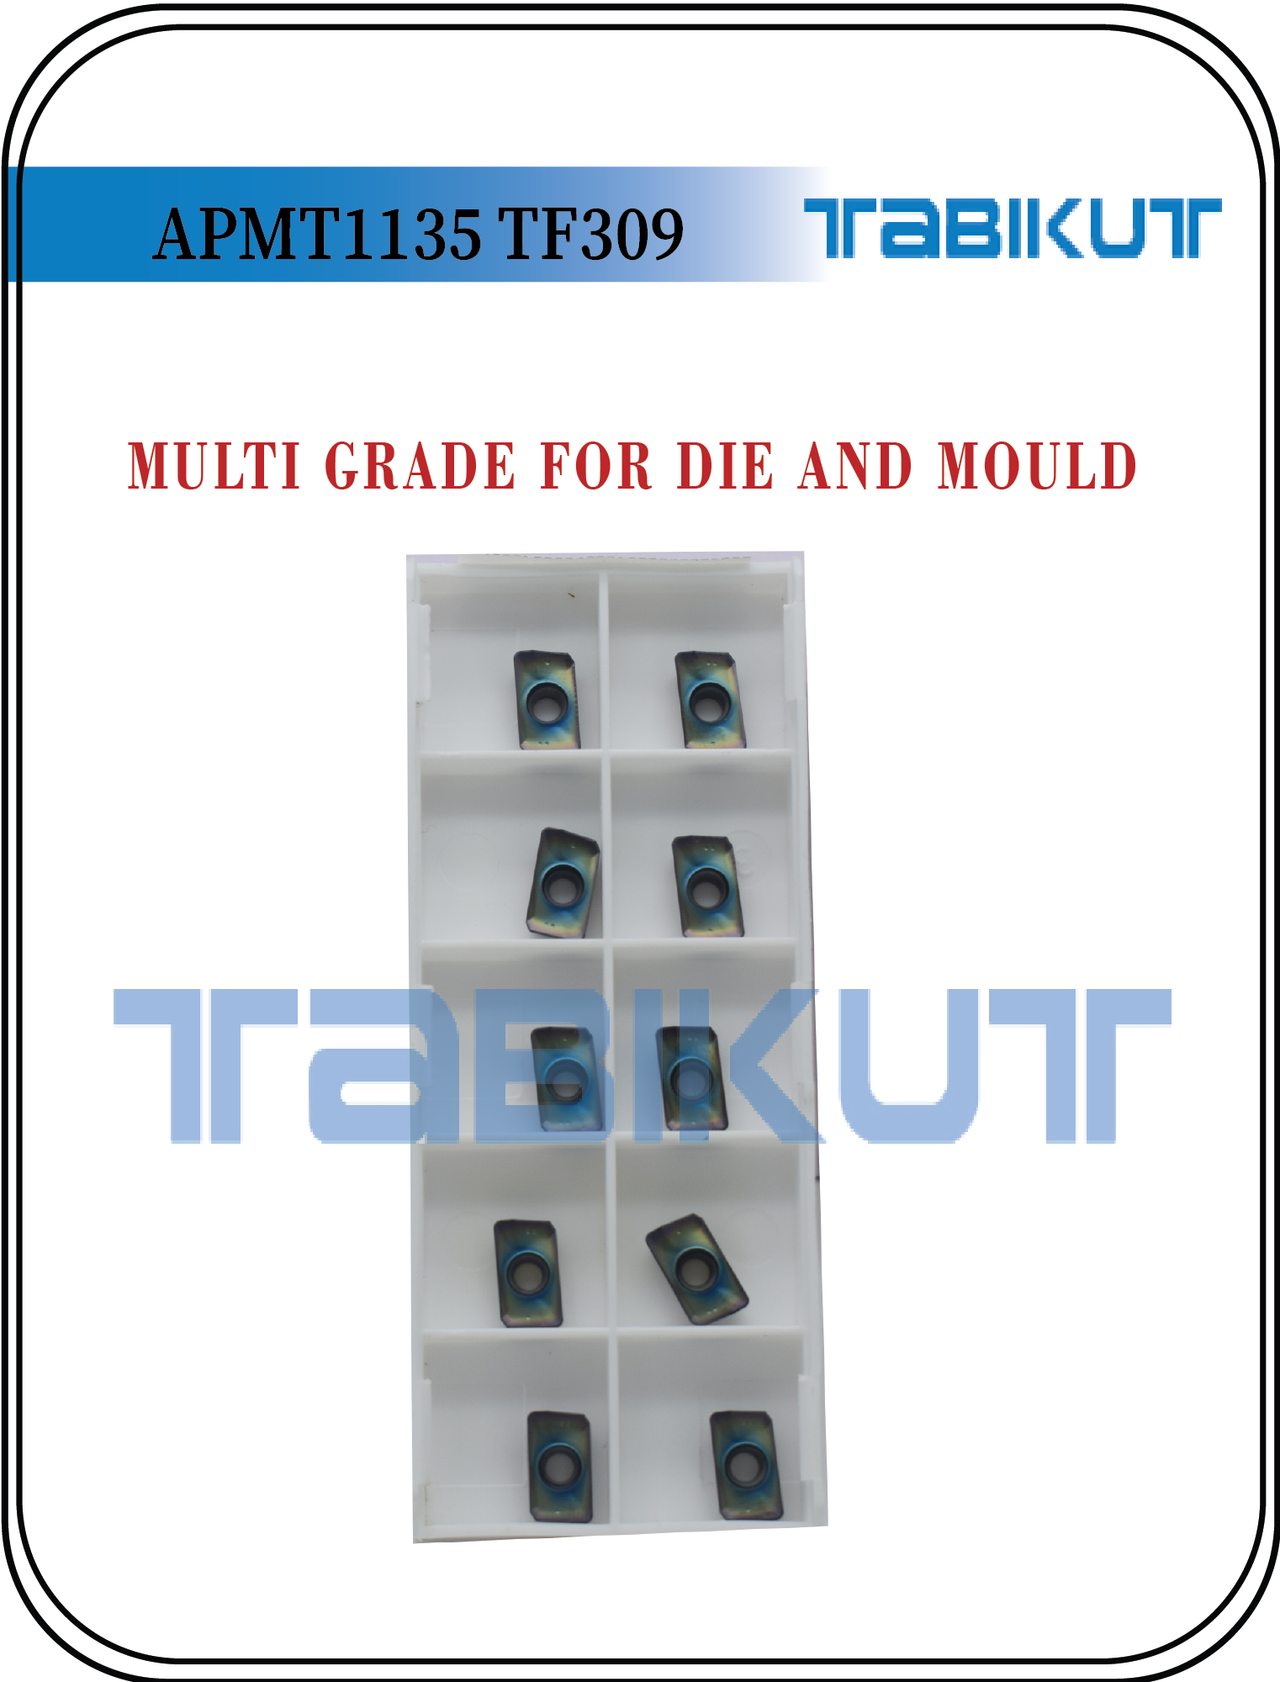 Carbide Insert APMT1135 TF309